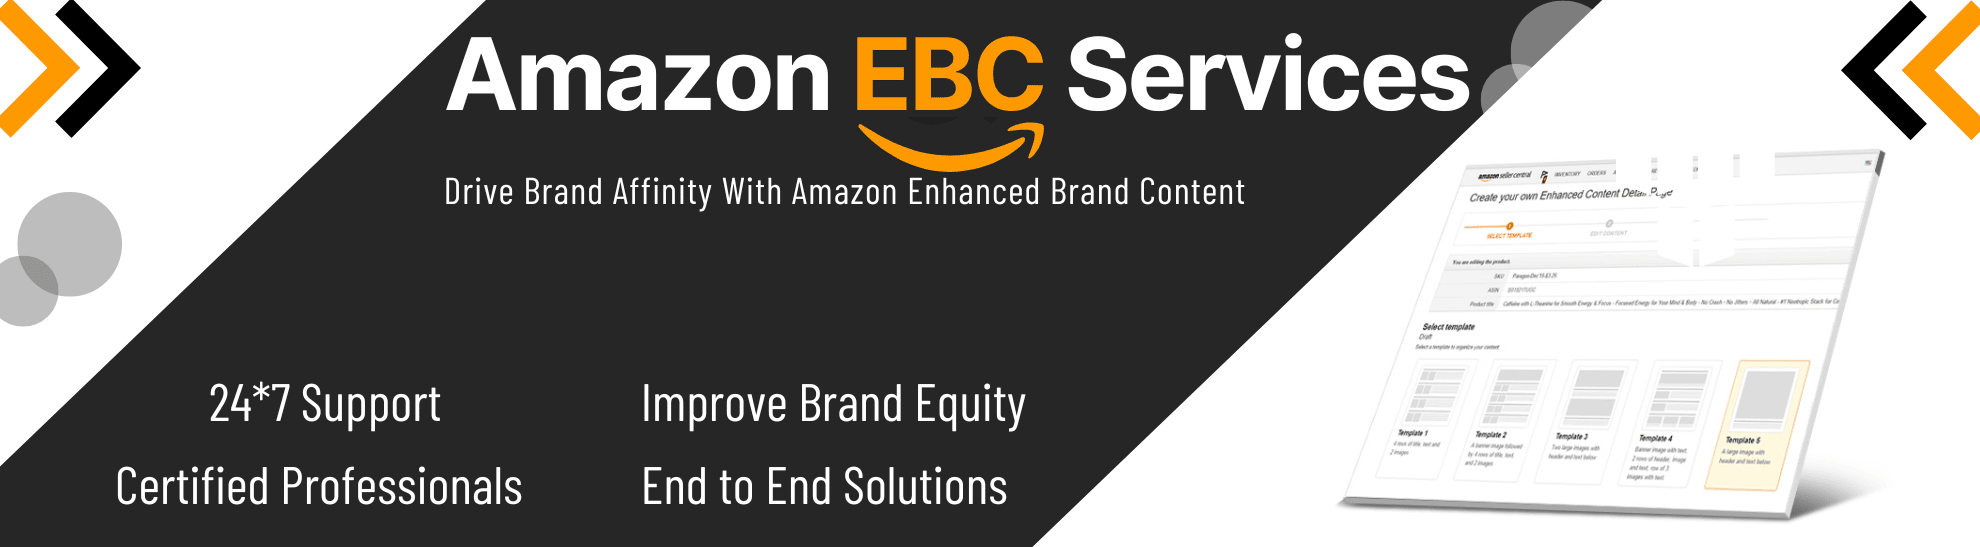 AmazonEBC Services